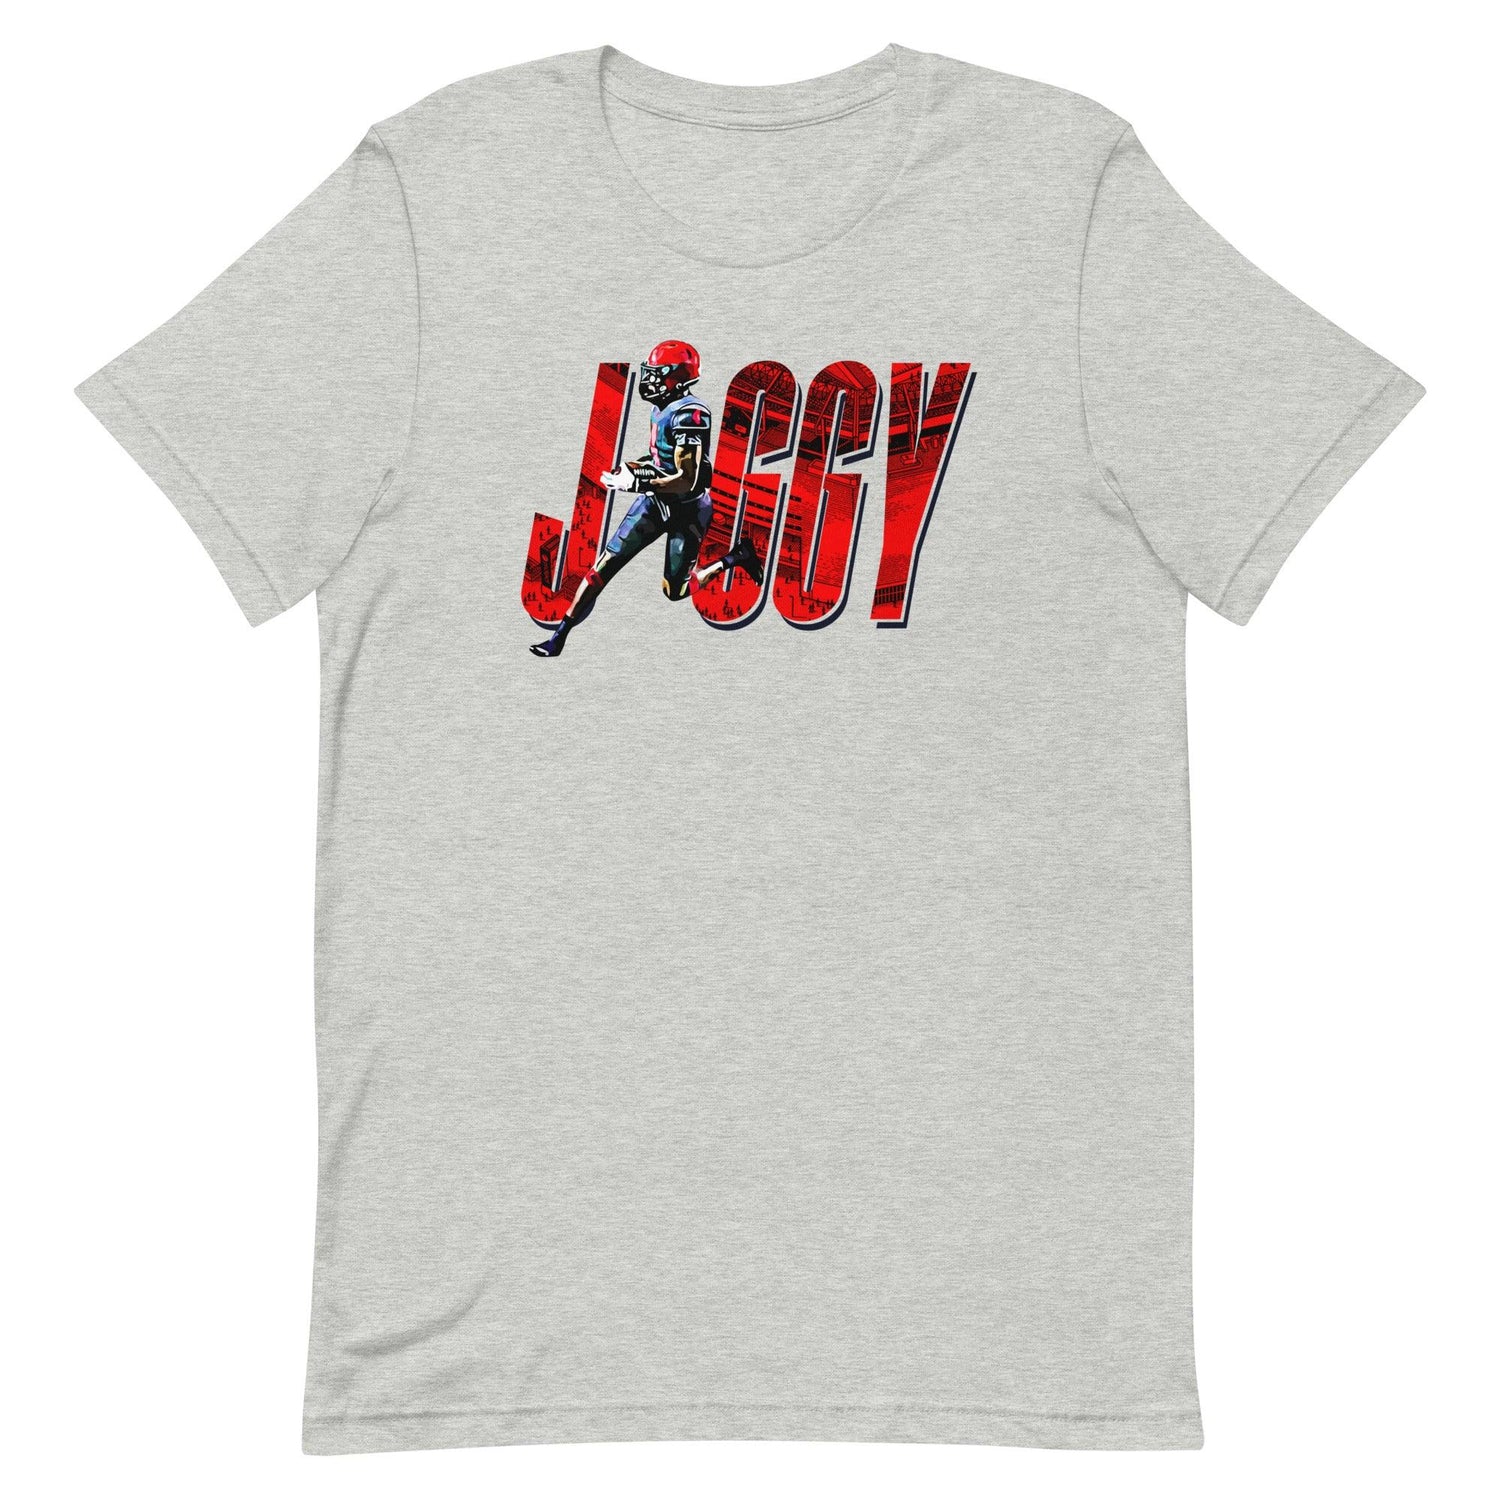 Cyrus Fagan "Jiggy" t-shirt - Fan Arch